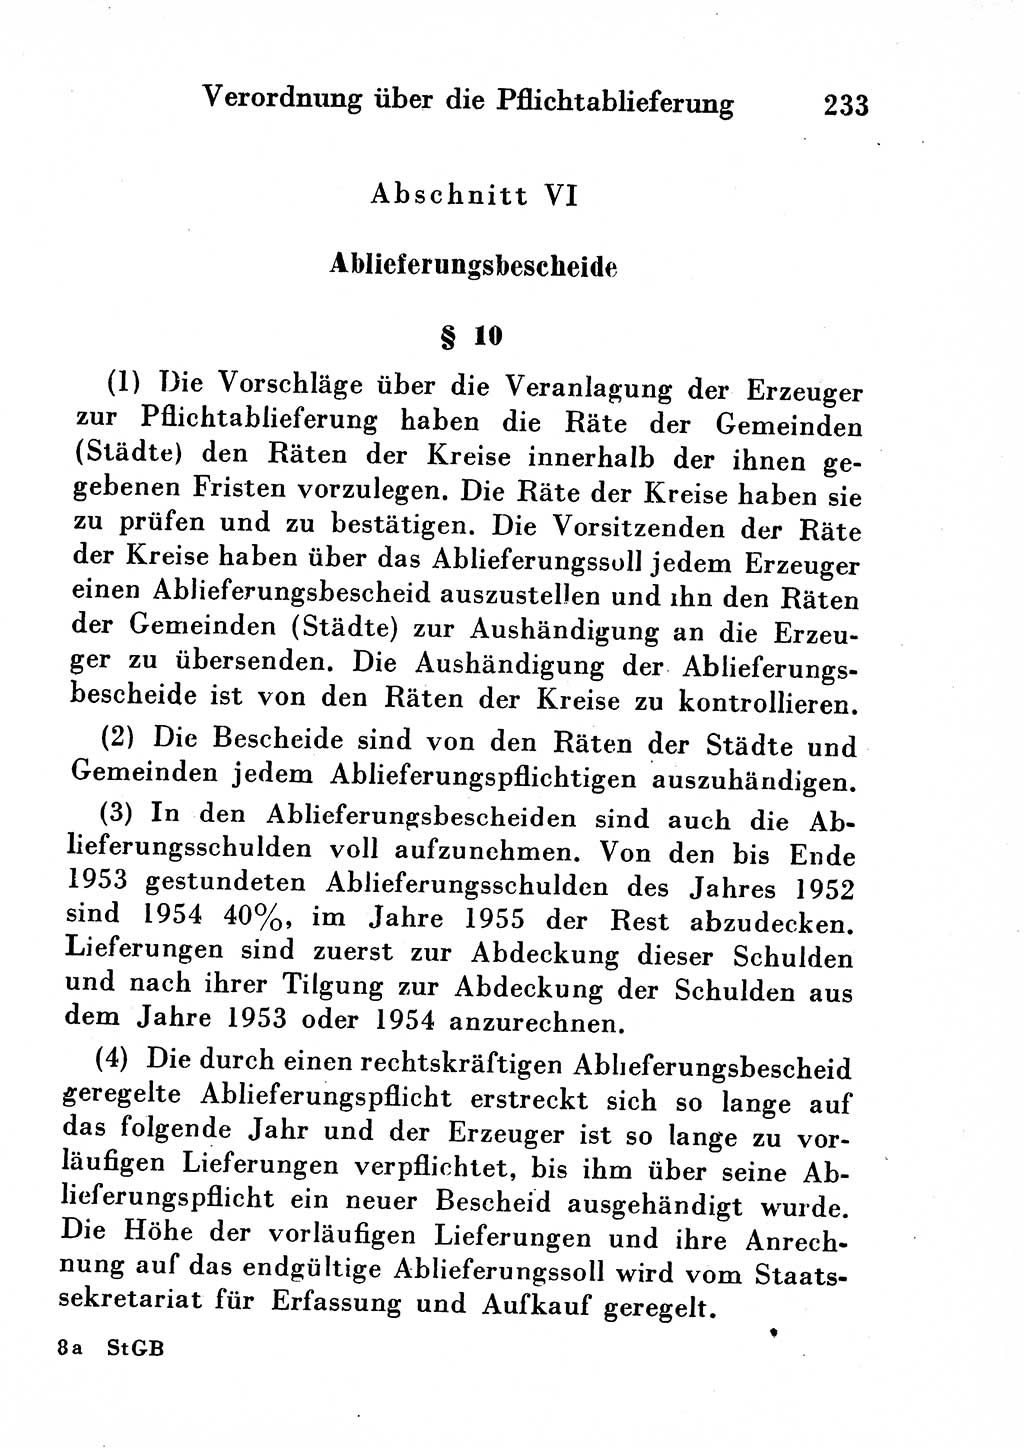 Strafgesetzbuch (StGB) und andere Strafgesetze [Deutsche Demokratische Republik (DDR)] 1954, Seite 233 (StGB Strafges. DDR 1954, S. 233)